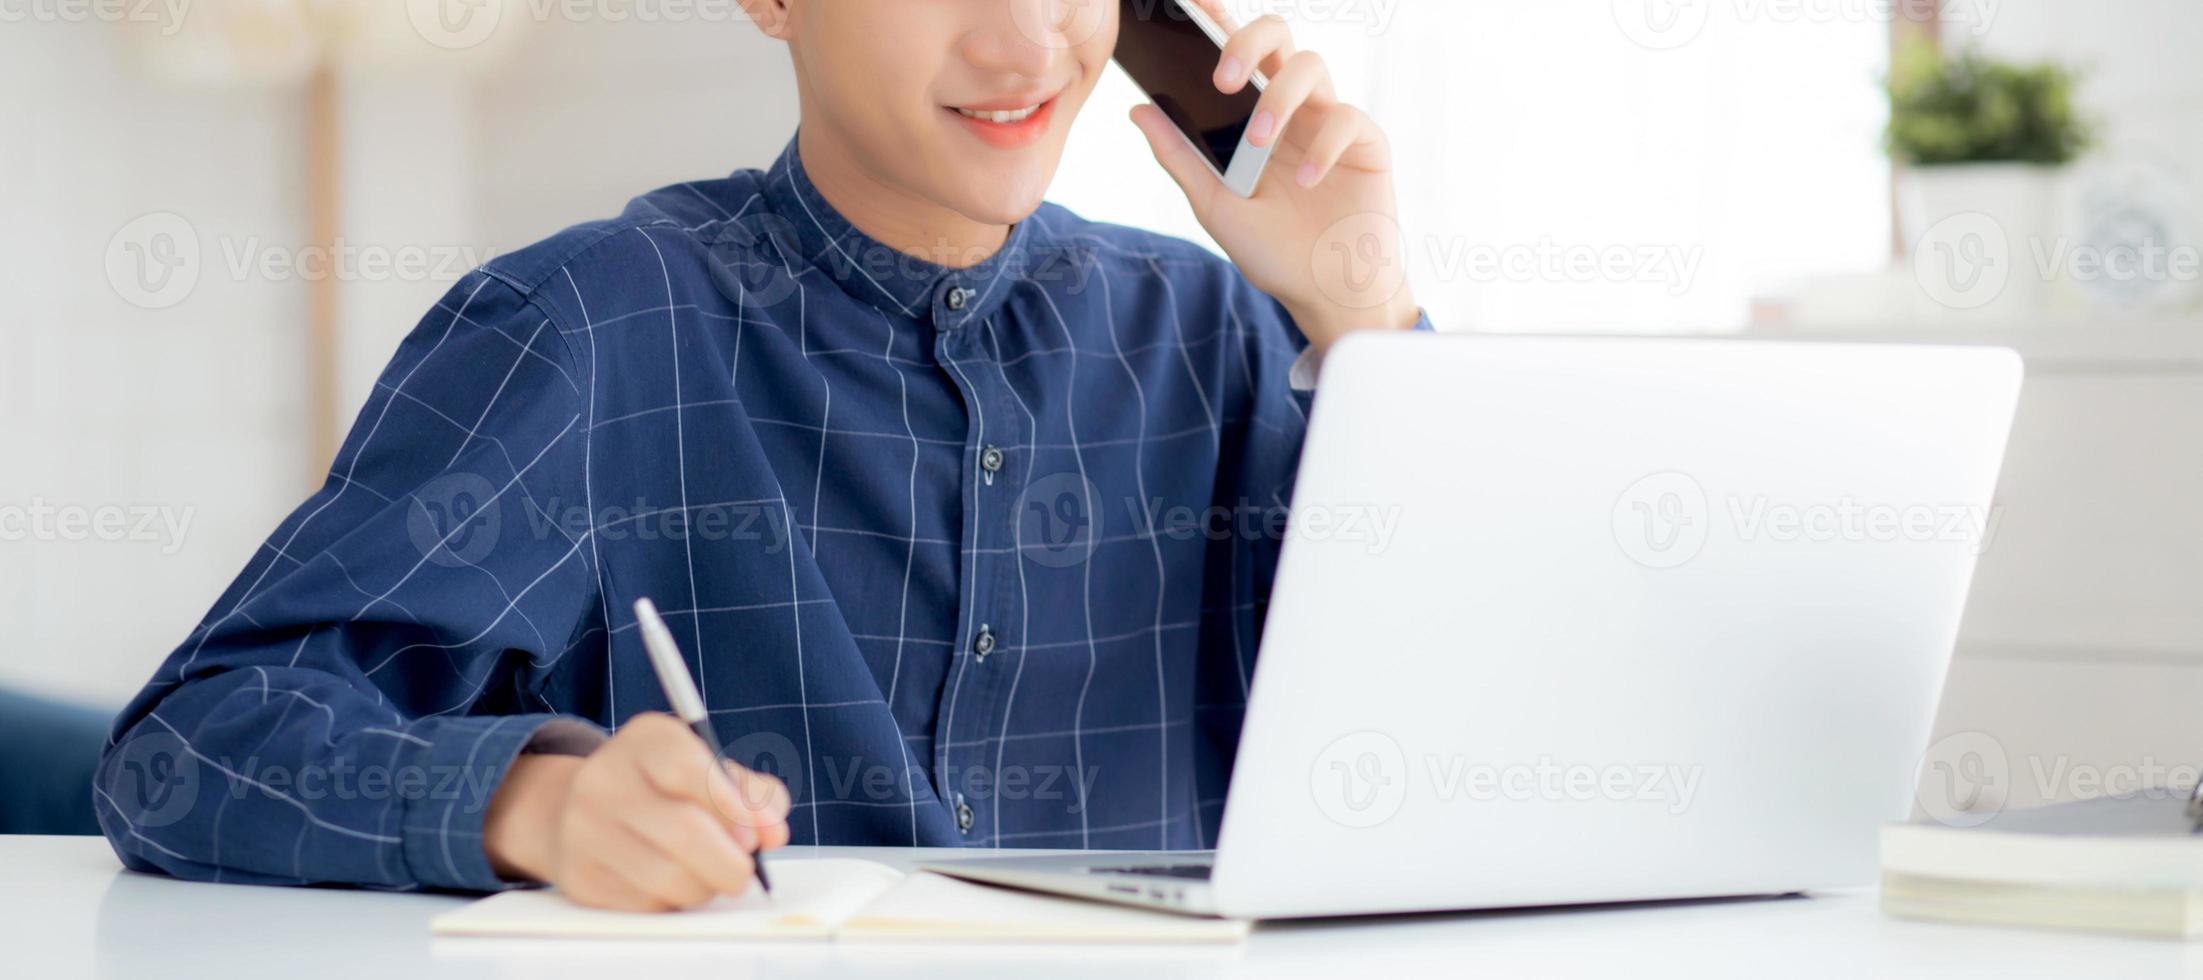 Hombre asiático joven que habla por teléfono y trabaja desde casa con una computadora portátil, un hombre independiente que escribe en un cuaderno y habla en un teléfono inteligente, se queda en casa, la vida doméstica, los negocios y el concepto de comunicación. foto